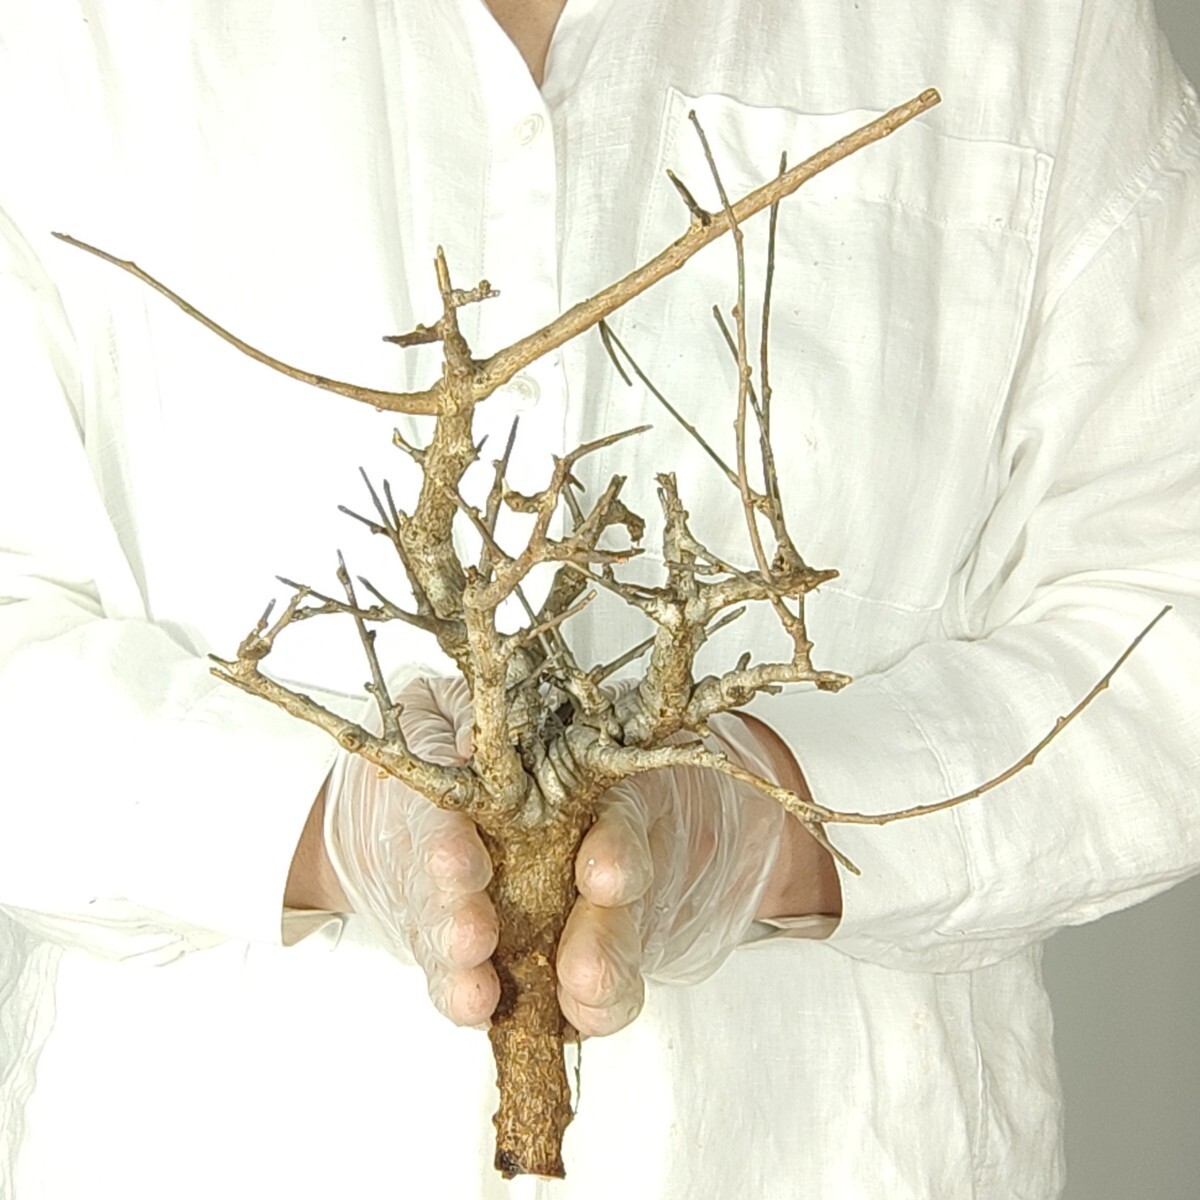 ネグレクタ V098 ボスウェリア・ネグレクタ 塊根植物 観葉植物 未発根 多肉植物 灌木 パキプス グラキリス 盆栽 アガベ コーデックスの画像3